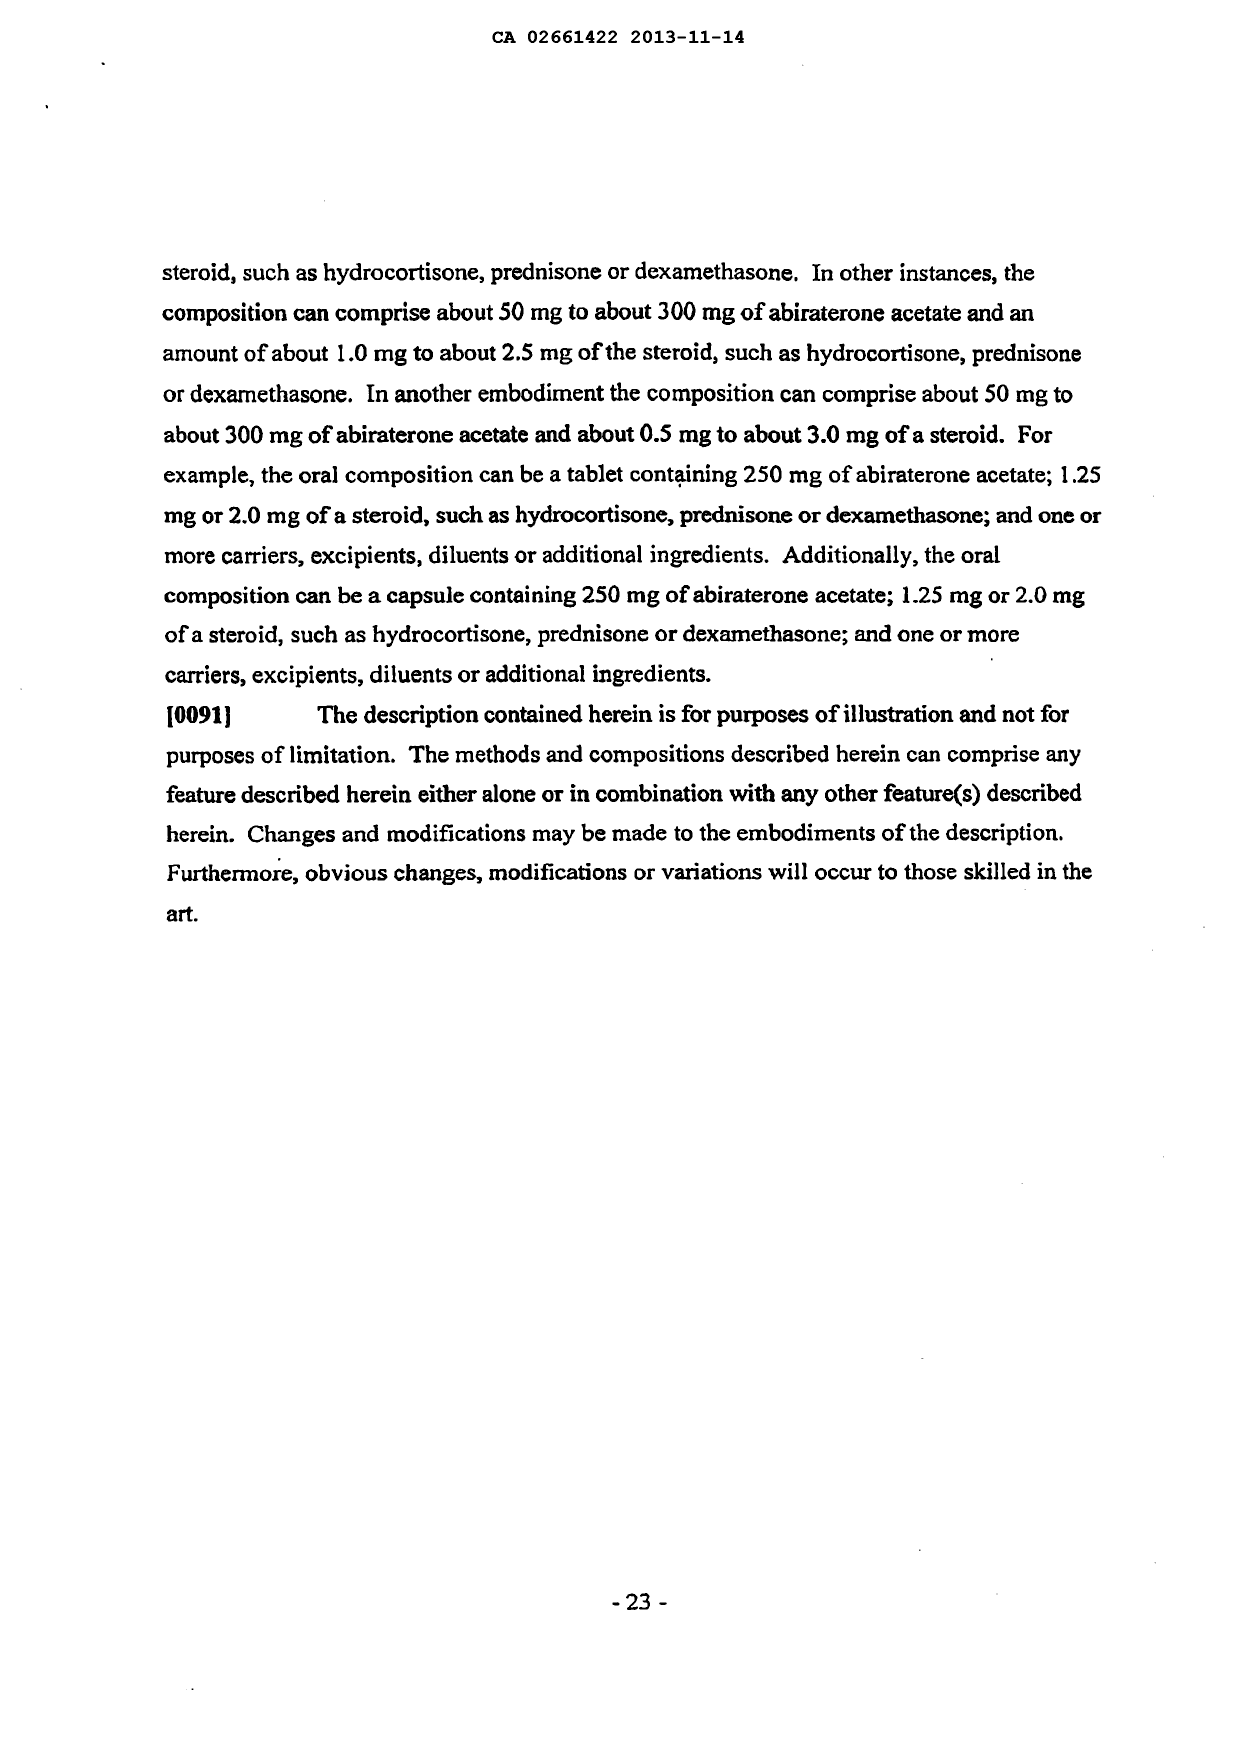 Canadian Patent Document 2661422. Description 20121214. Image 23 of 23